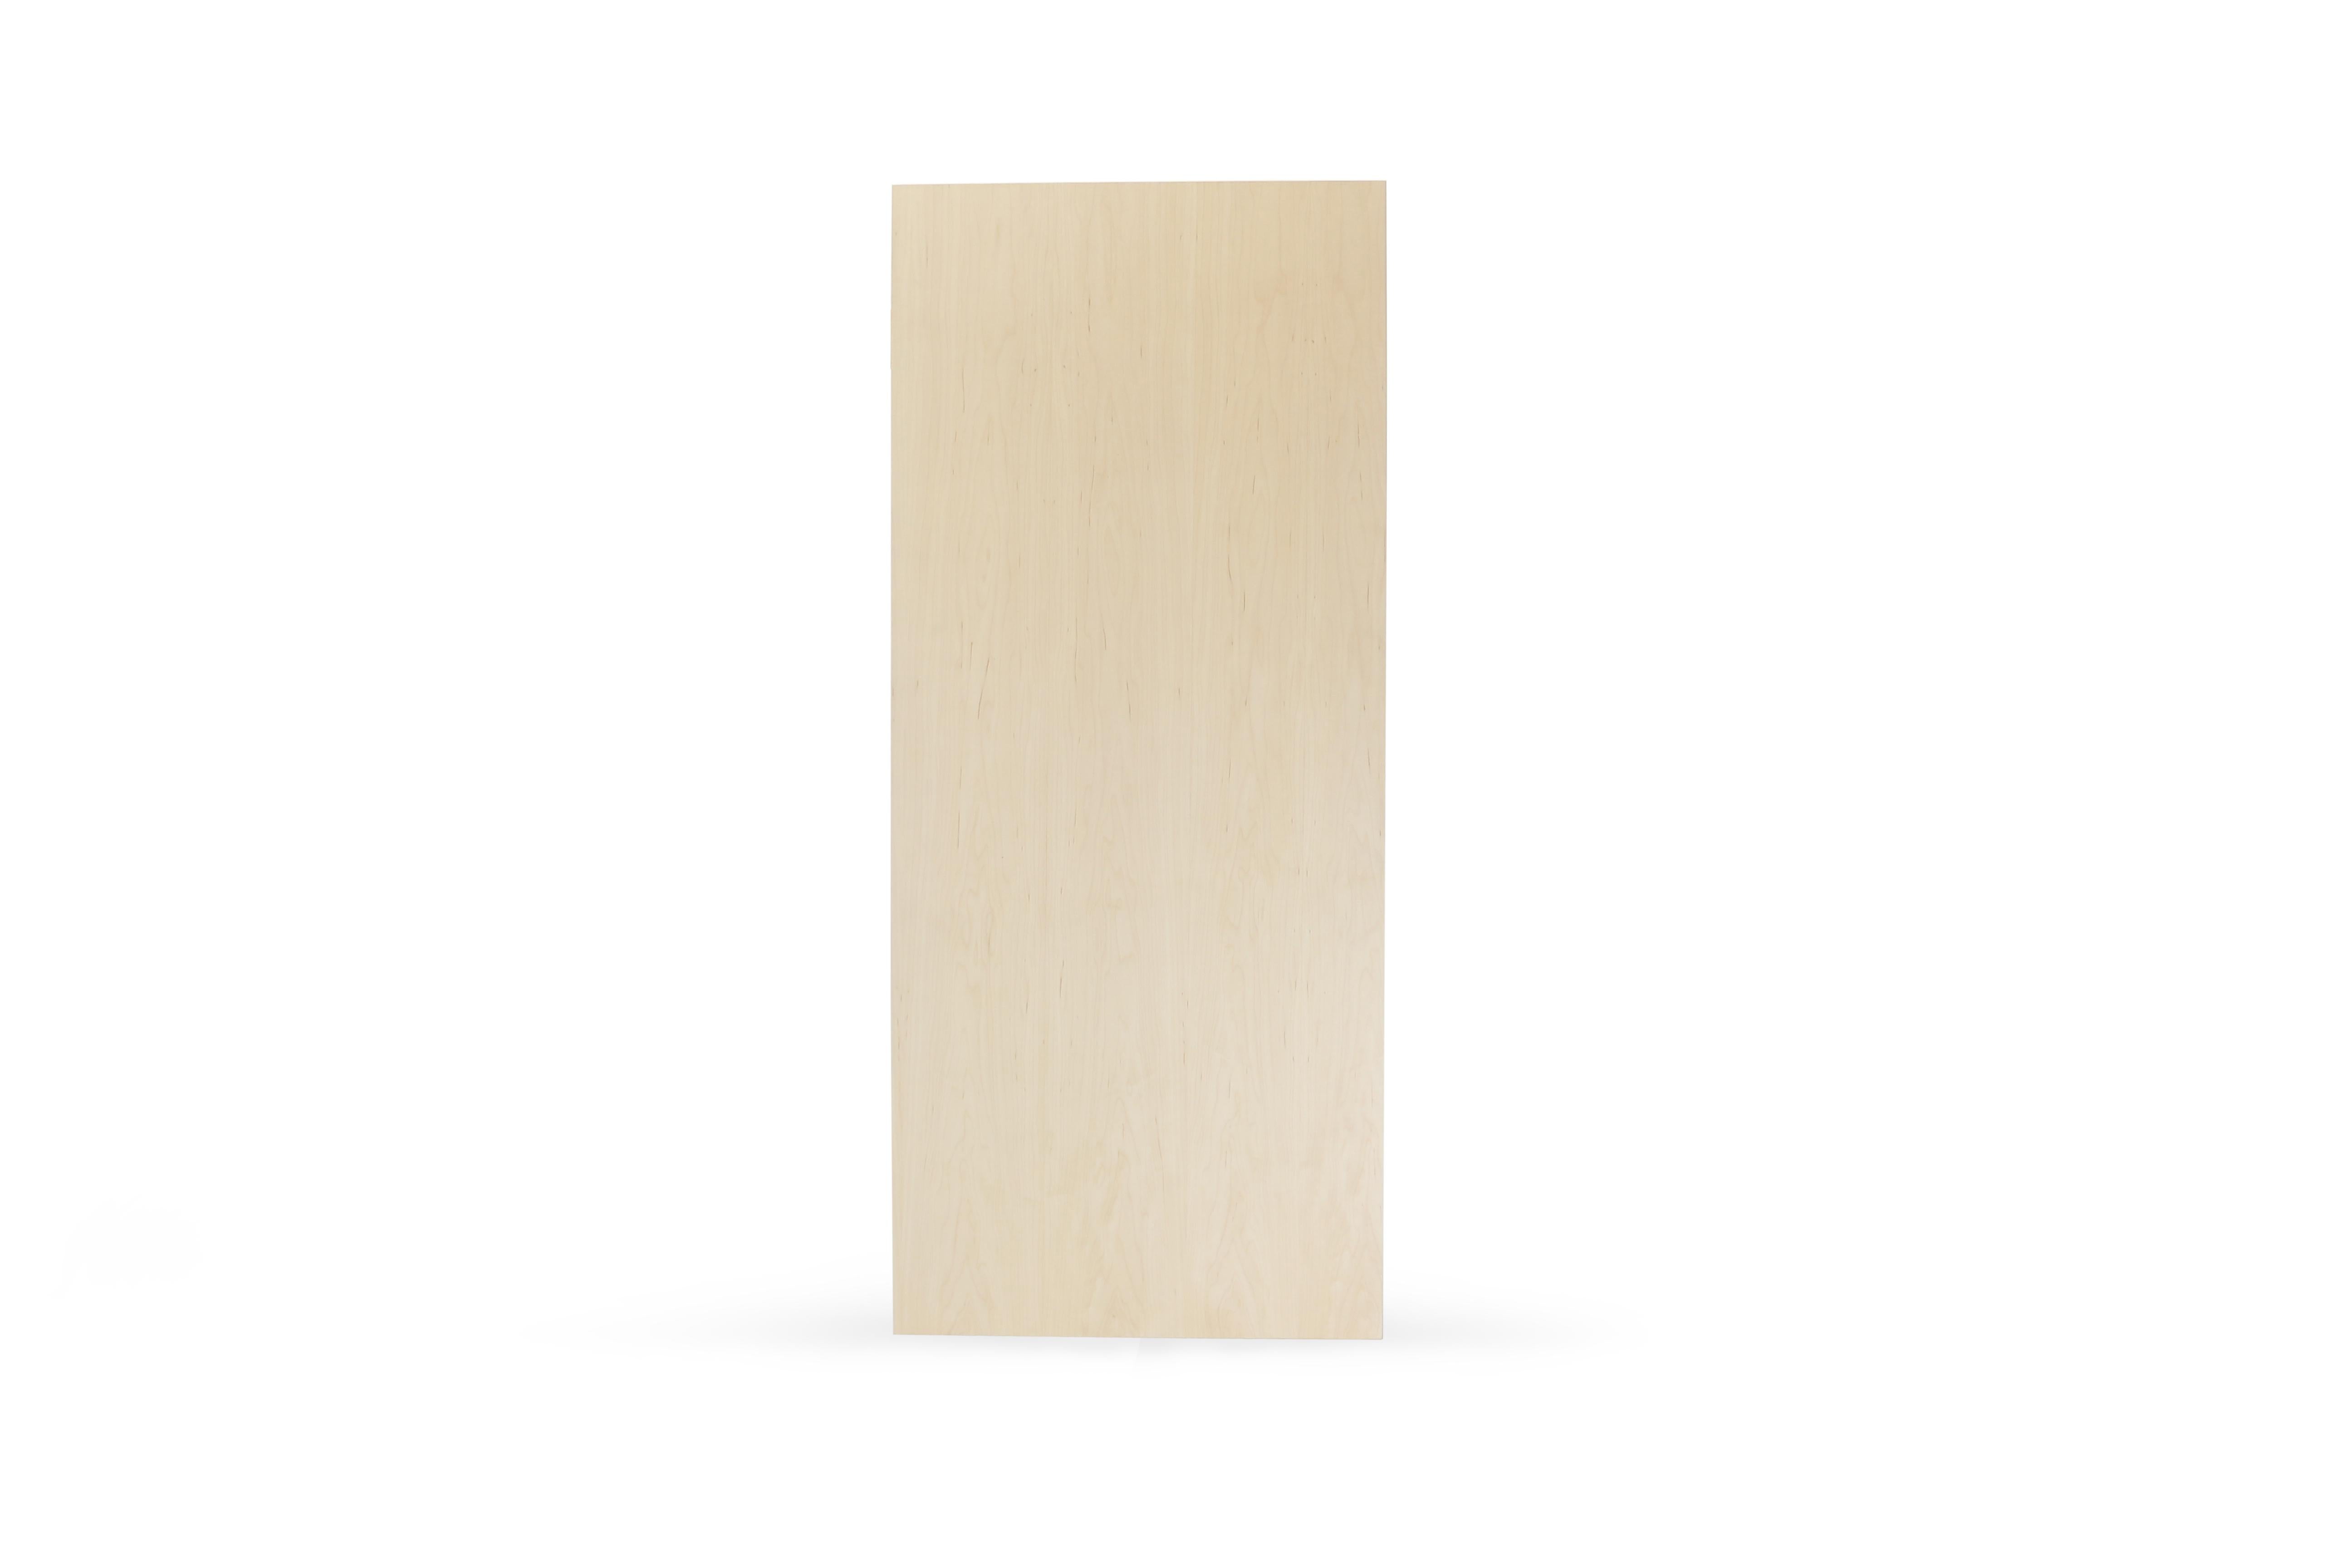 Ein schlanker, eleganter und leichter Schreibtisch, der in jeder gewünschten Farbe gestaltet werden kann. Dieses handgefertigte Möbelstück verbindet perfekt industrielle Haarnadelfüße mit einer abgeschrägten Holzplatte. Die unregelmäßige Schönheit